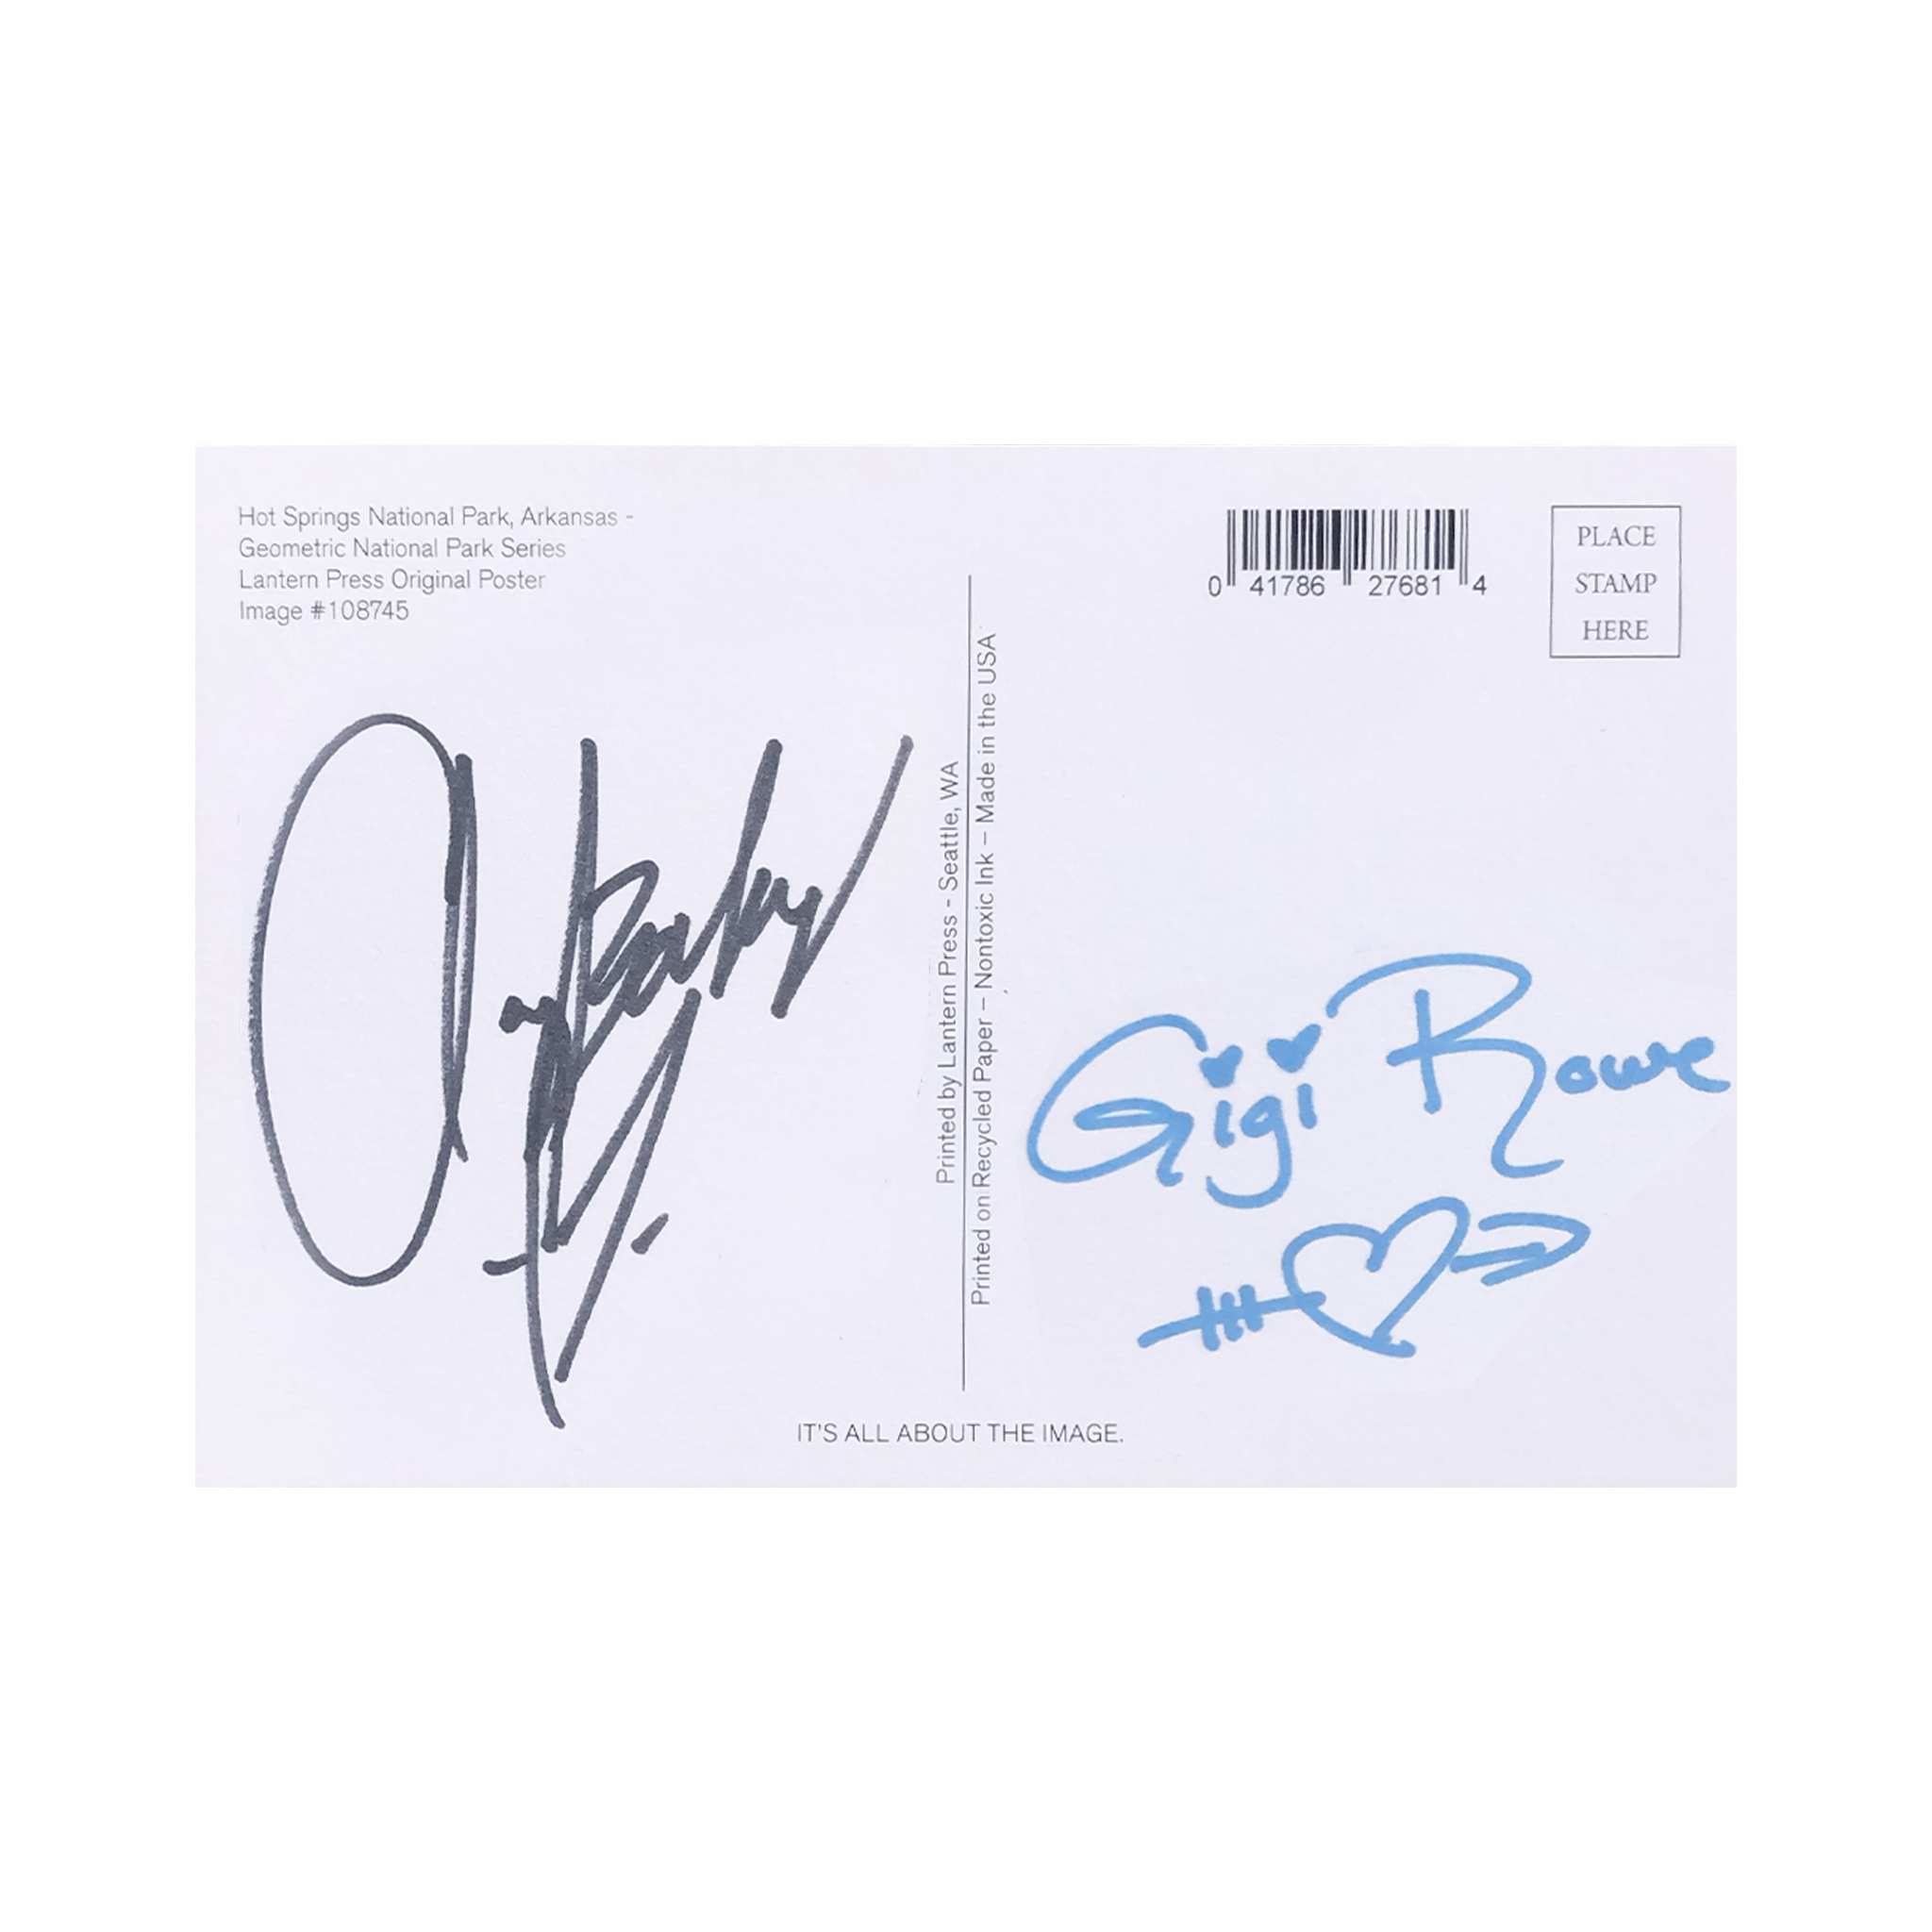 Signed Postcard - Gigi Rowe x ClayBaby